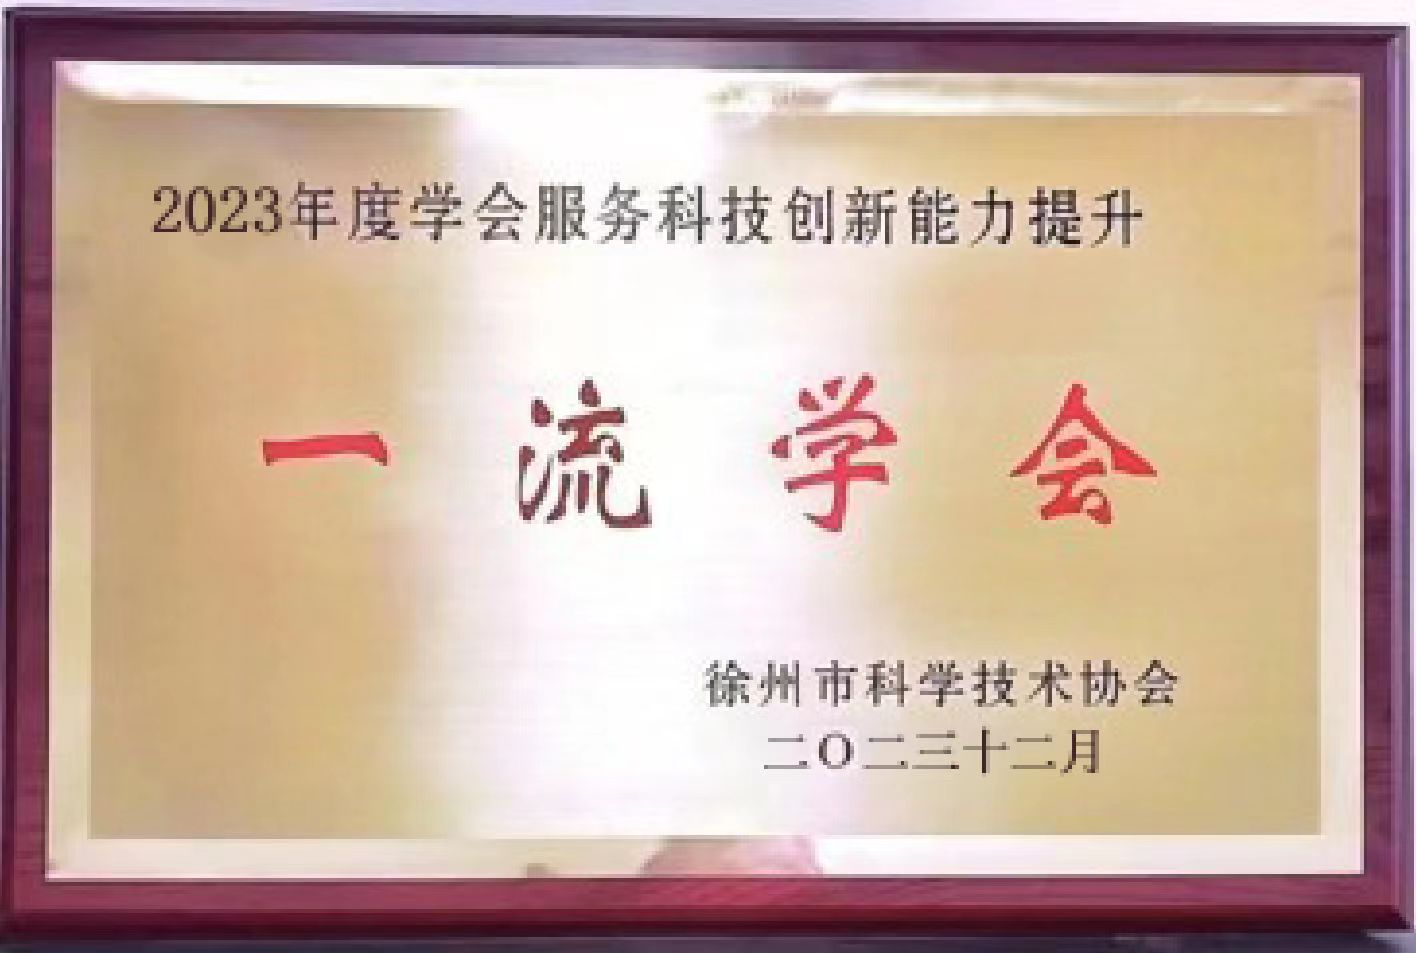 徐州市水利学会连续第四年荣获“一流学会”称号